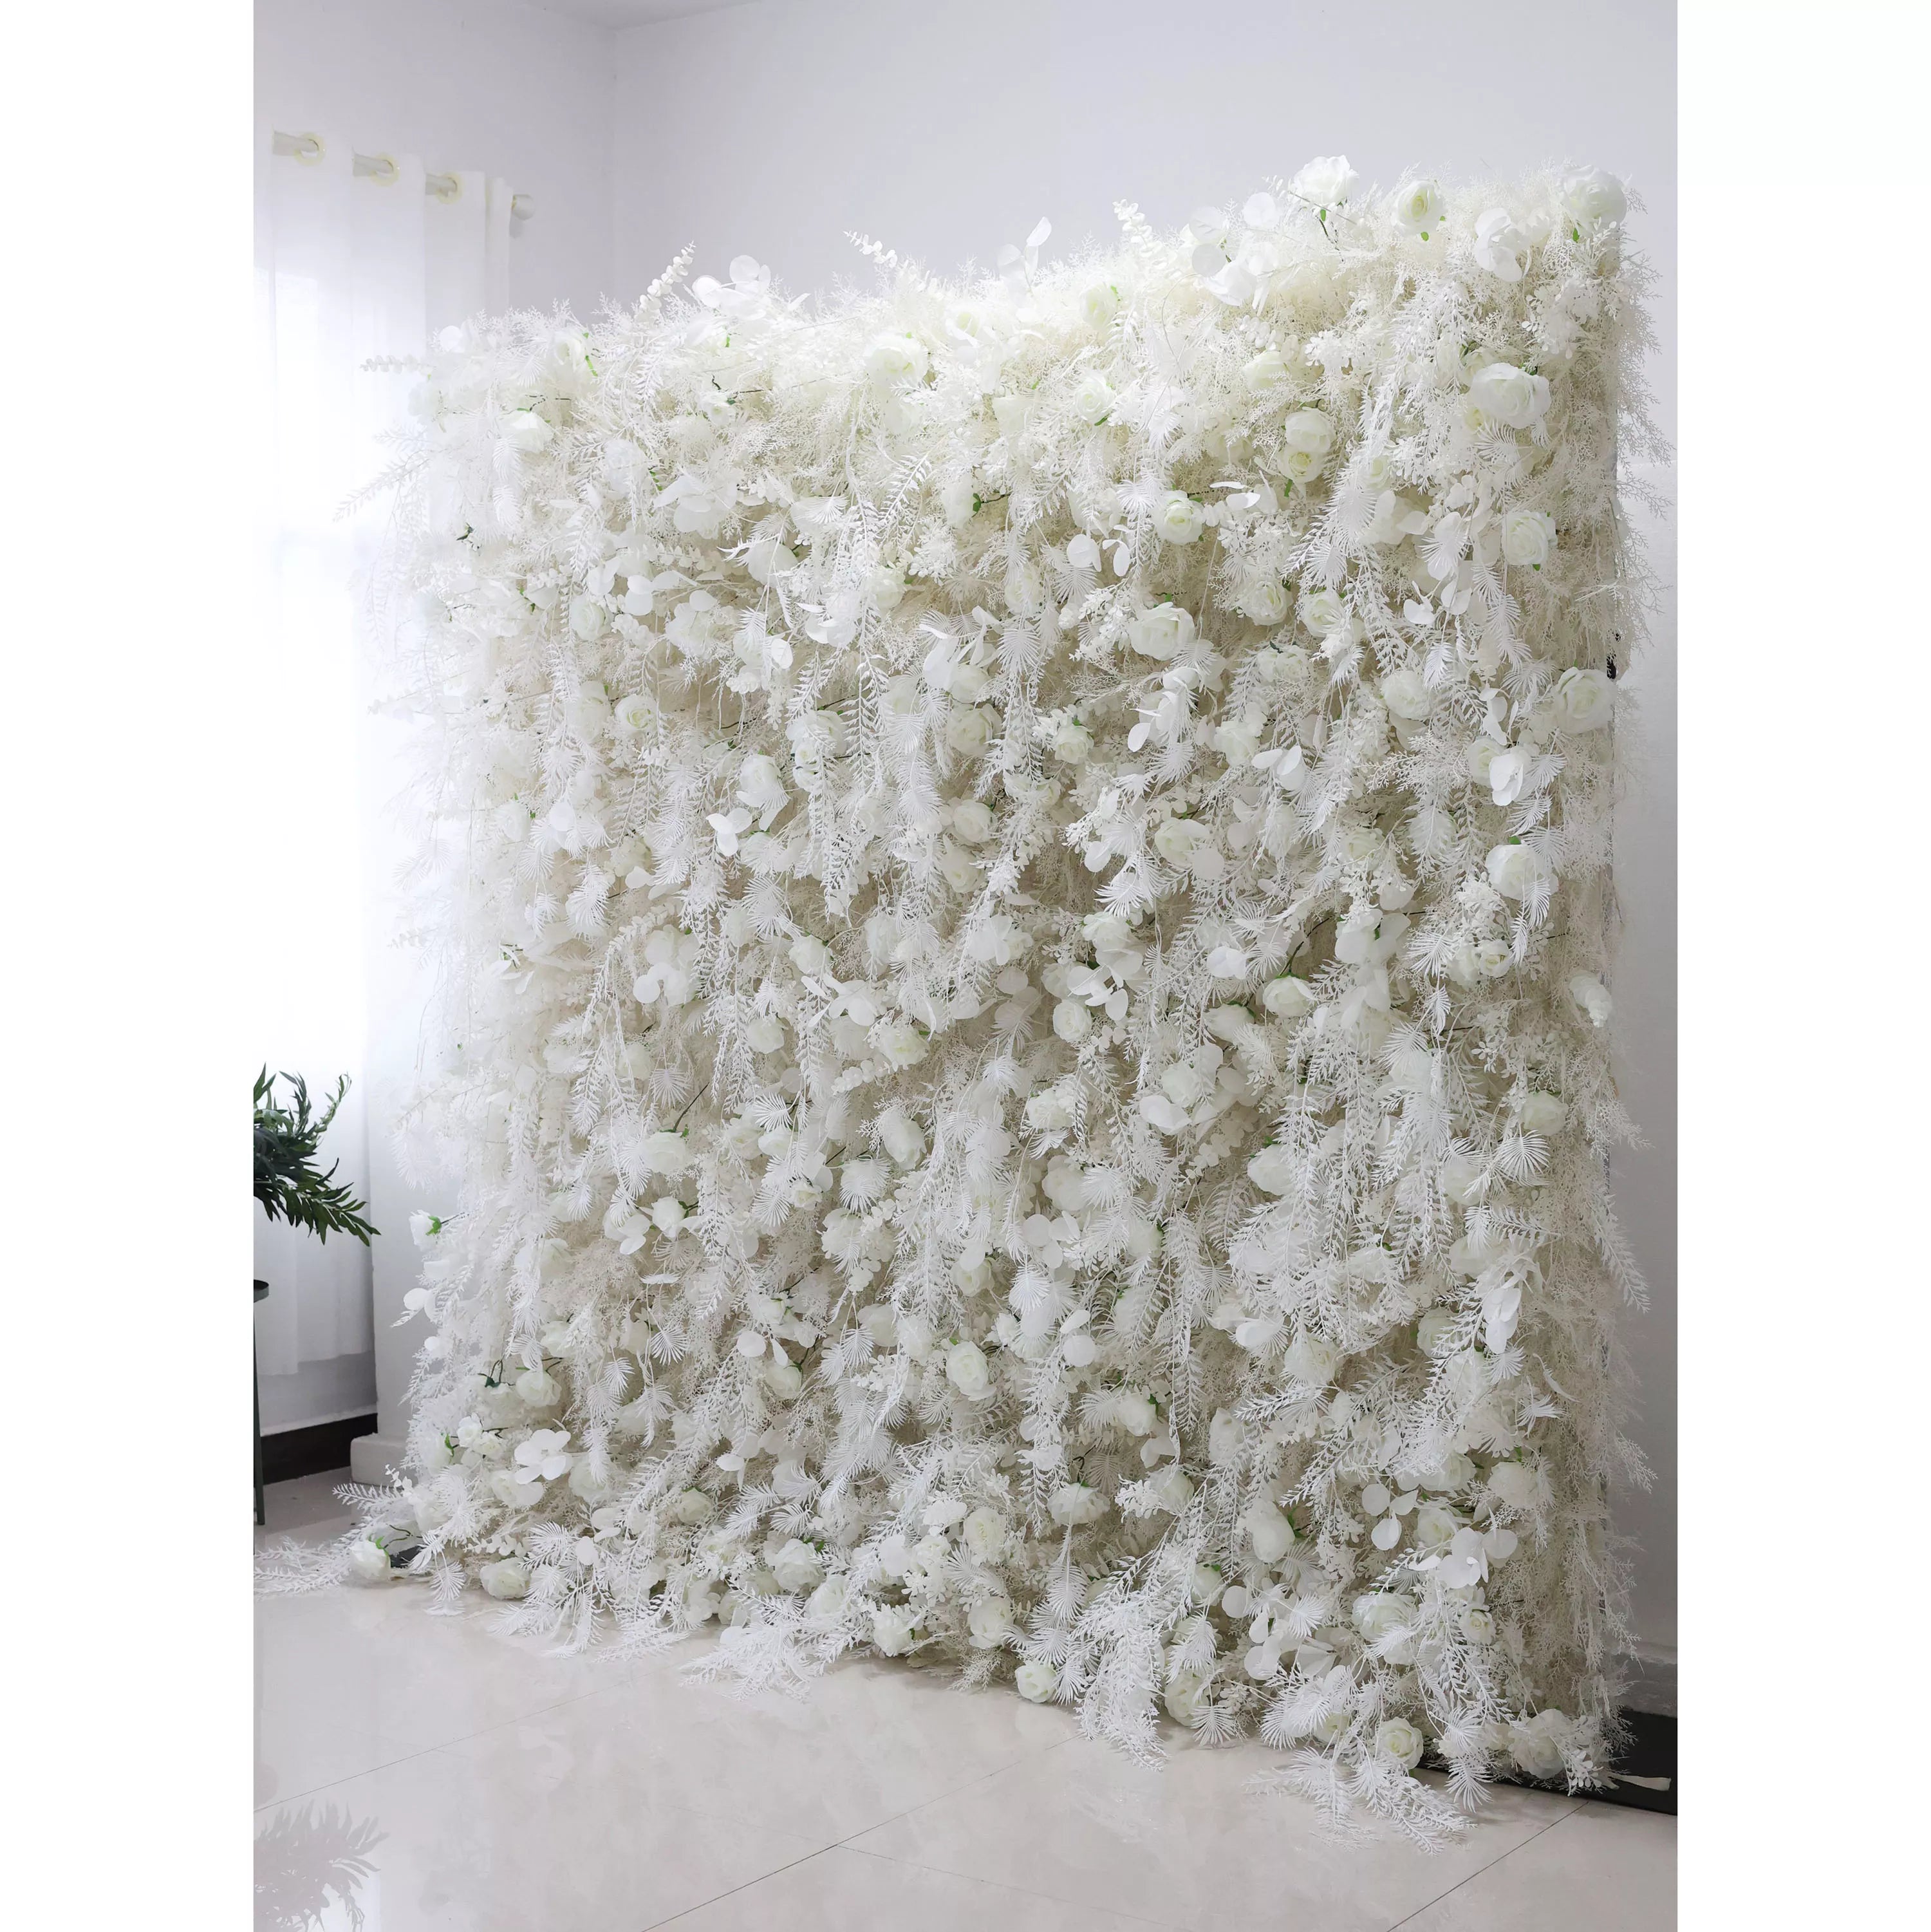 جدار أزهار أبيض أثيري بلهجات السرخس الريش: واحة من الصفاء للعلاوة من من من من